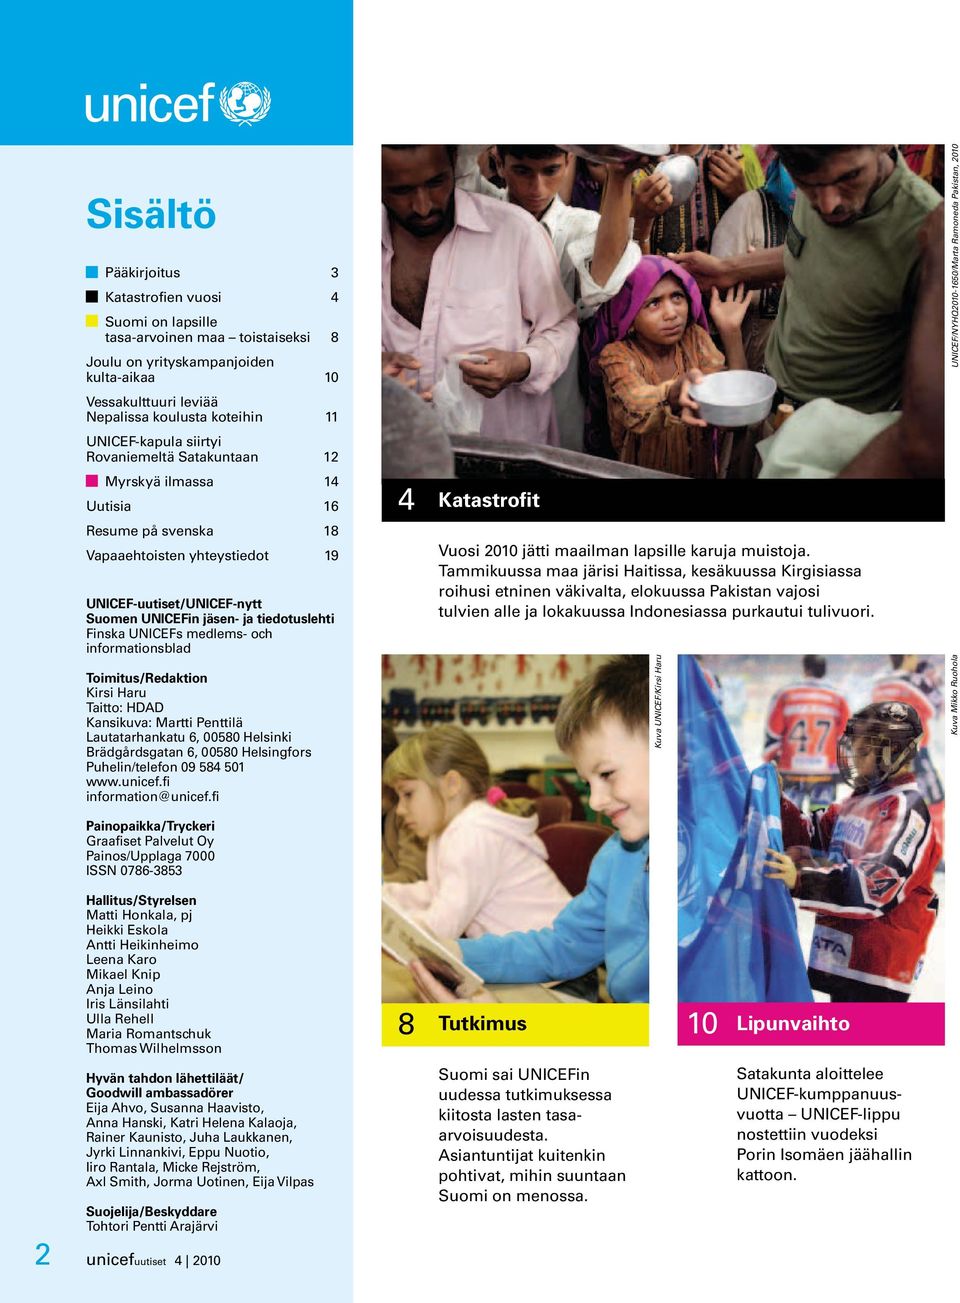 Finska UNICEFs medlems- och informationsblad Toimitus/Redaktion Kirsi Haru Taitto: HDAD Kansikuva: Martti Penttilä Lautatarhankatu 6, 00580 Helsinki Brädgårdsgatan 6, 00580 Helsingfors